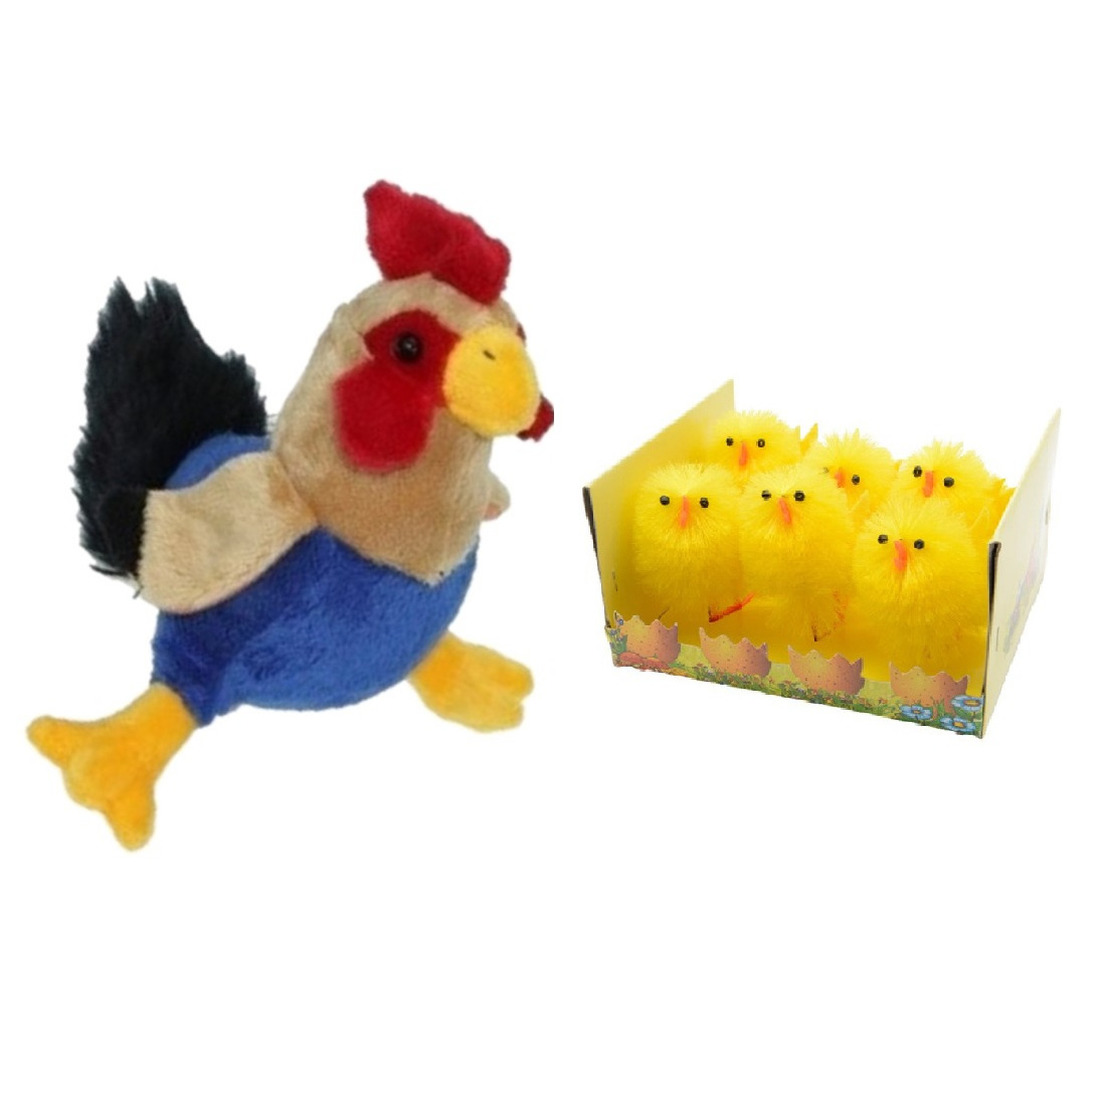 Pluche kippen-hanen knuffel van 20 cm met 6x stuks mini kuikentjes 6,5 cm